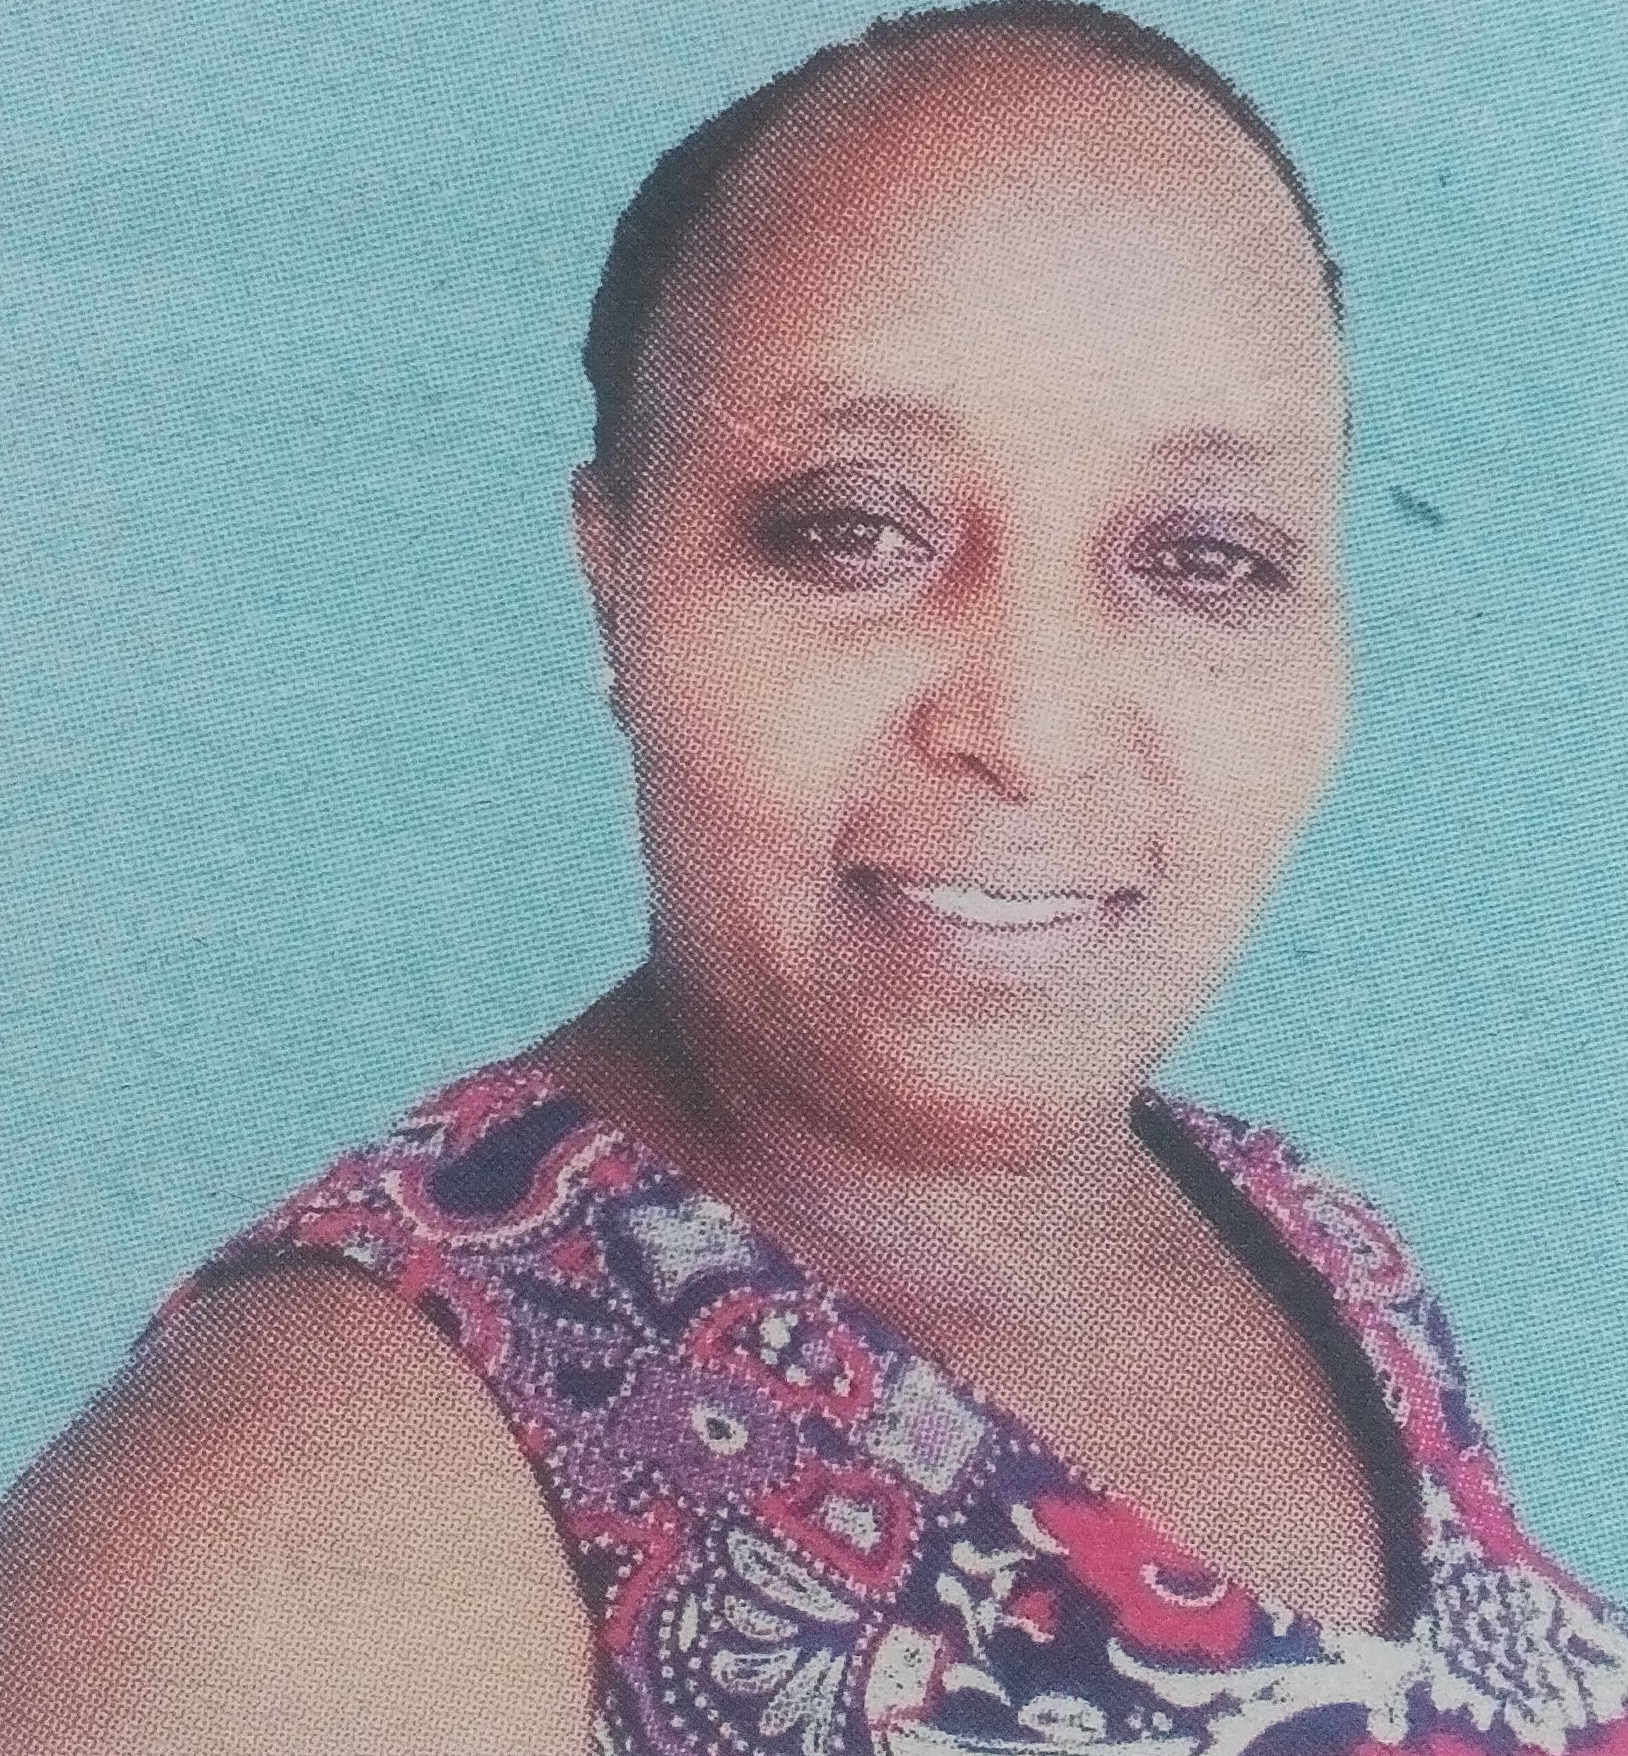 Obituary Image of Rose Kaigongi Murithi